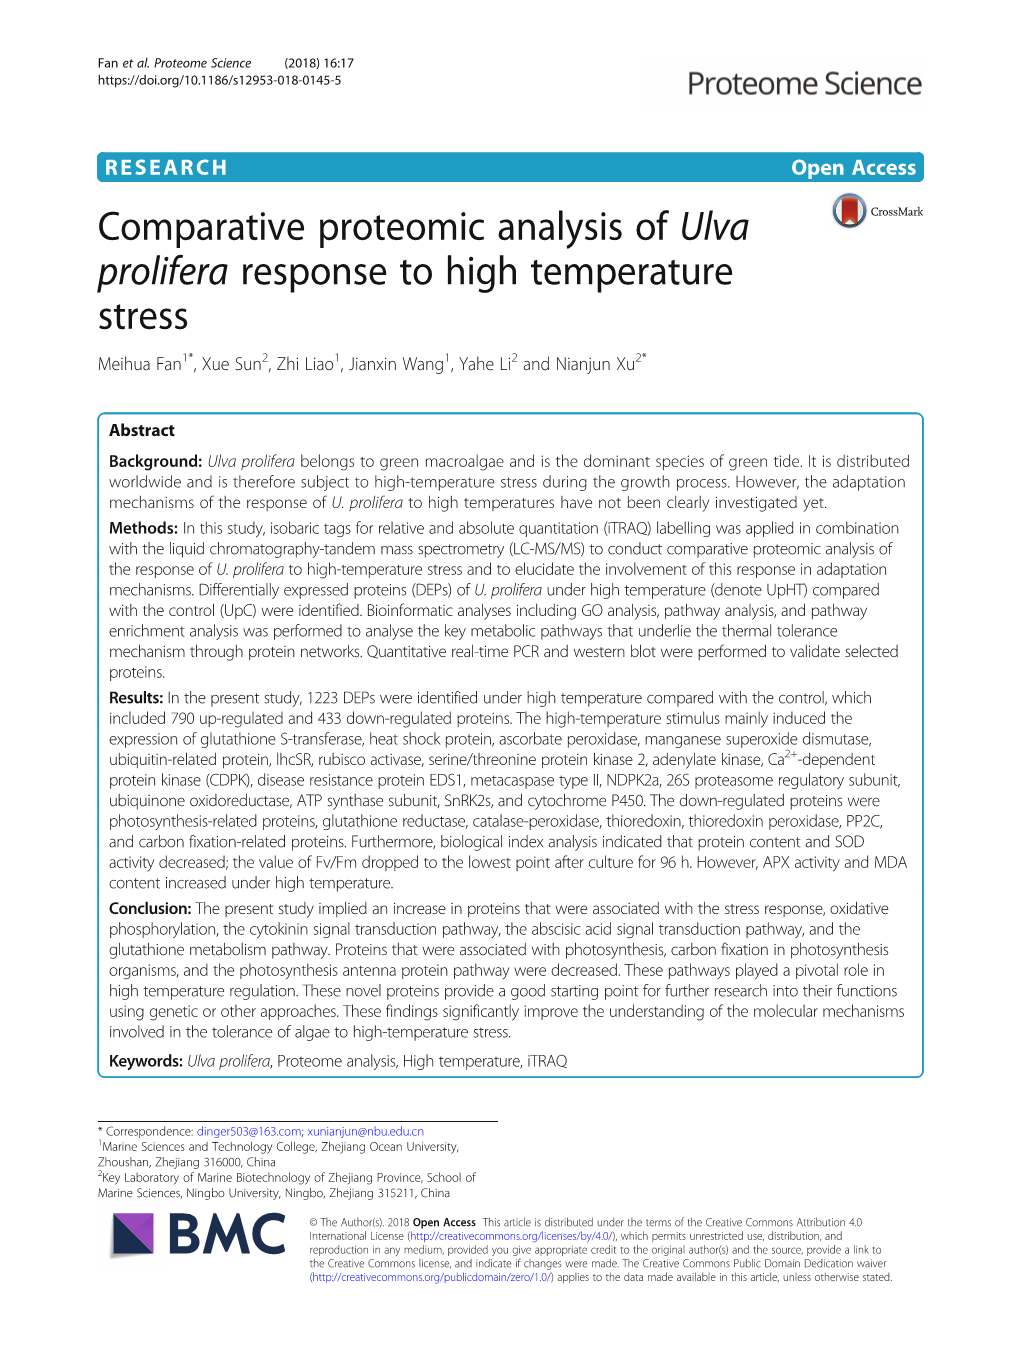 Comparative Proteomic Analysis of Ulva Prolifera Response to High Temperature Stress Meihua Fan1*, Xue Sun2, Zhi Liao1, Jianxin Wang1, Yahe Li2 and Nianjun Xu2*